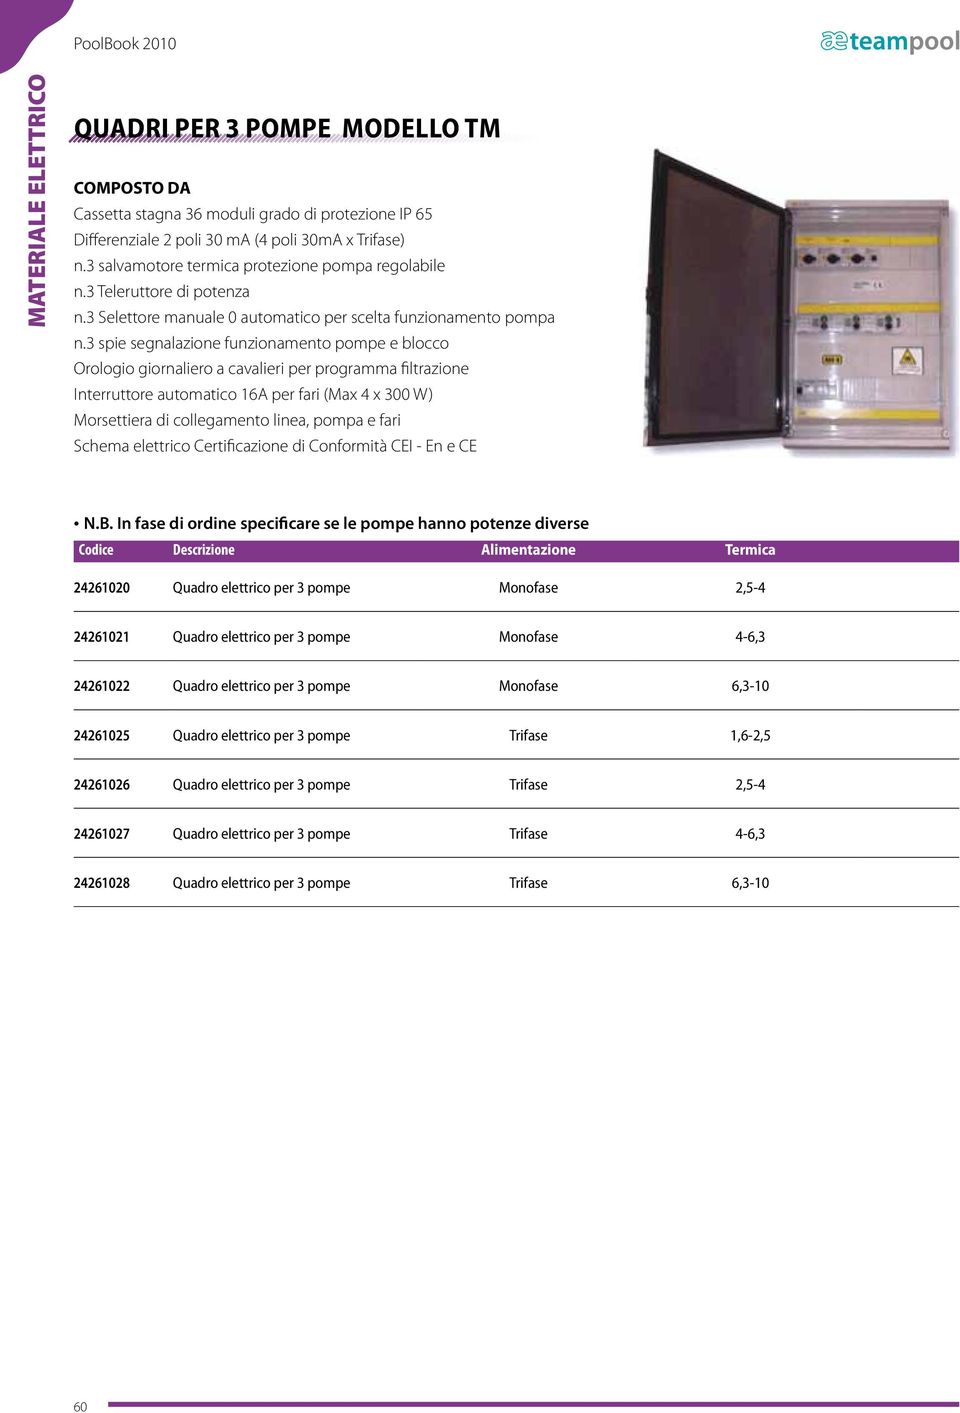 3 spie segnalazione funzionamento pompe e blocco Interruttore automatico 16A per fari (Max 4 x 300 W) Morsettiera di collegamento linea, pompa e fari Schema elettrico Certificazione di Conformità CEI